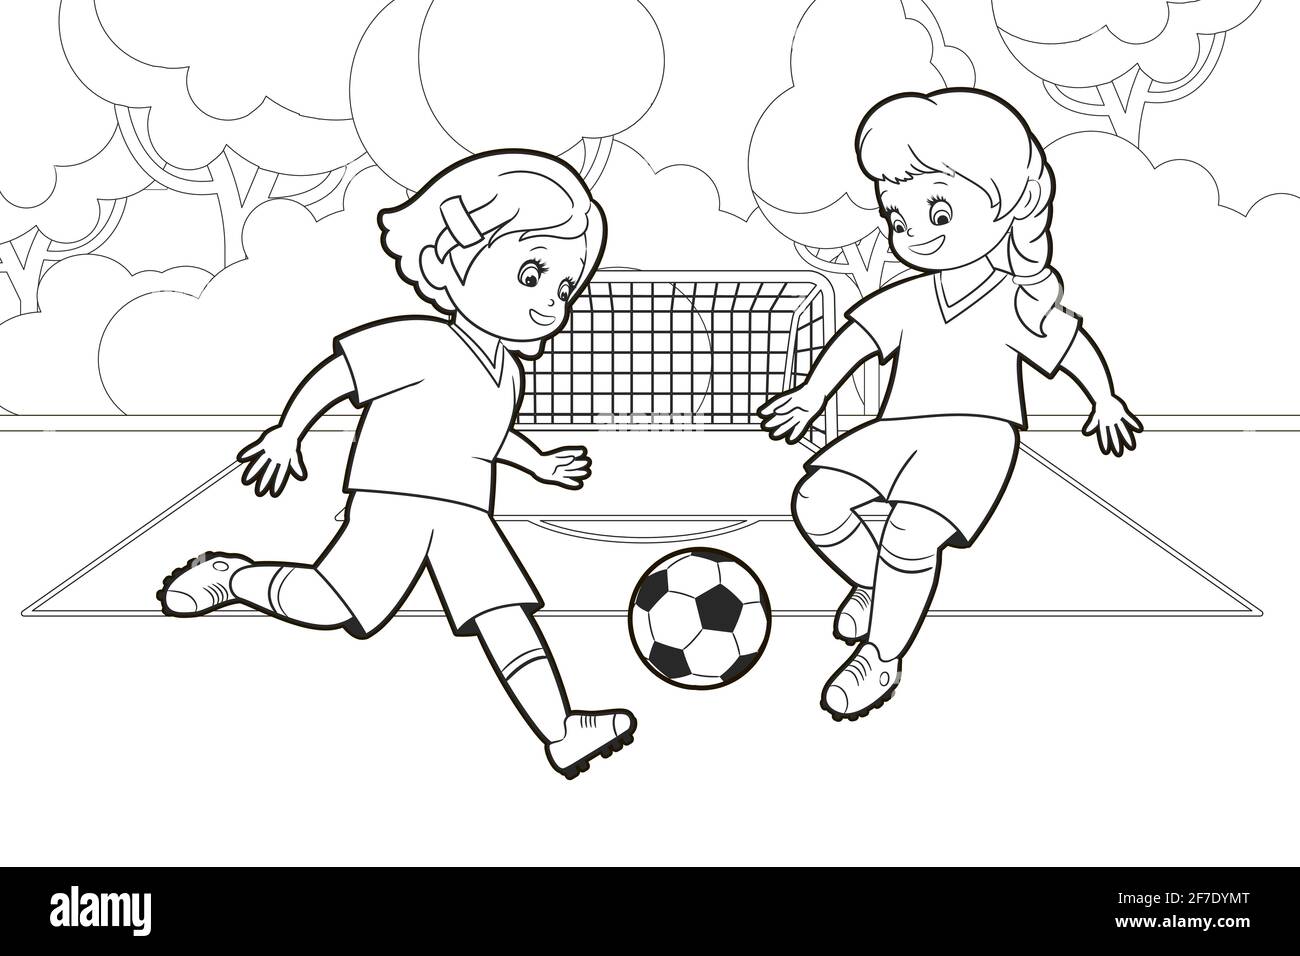 Teenager-Mädchen spielen Fußball, indem sie einen Ball treten, während sie auf dem Fußballfeld laufen.Vektor-Illustration im Cartoon-Stil, isolierte schwarze und weiße Linienkunst Stock Vektor